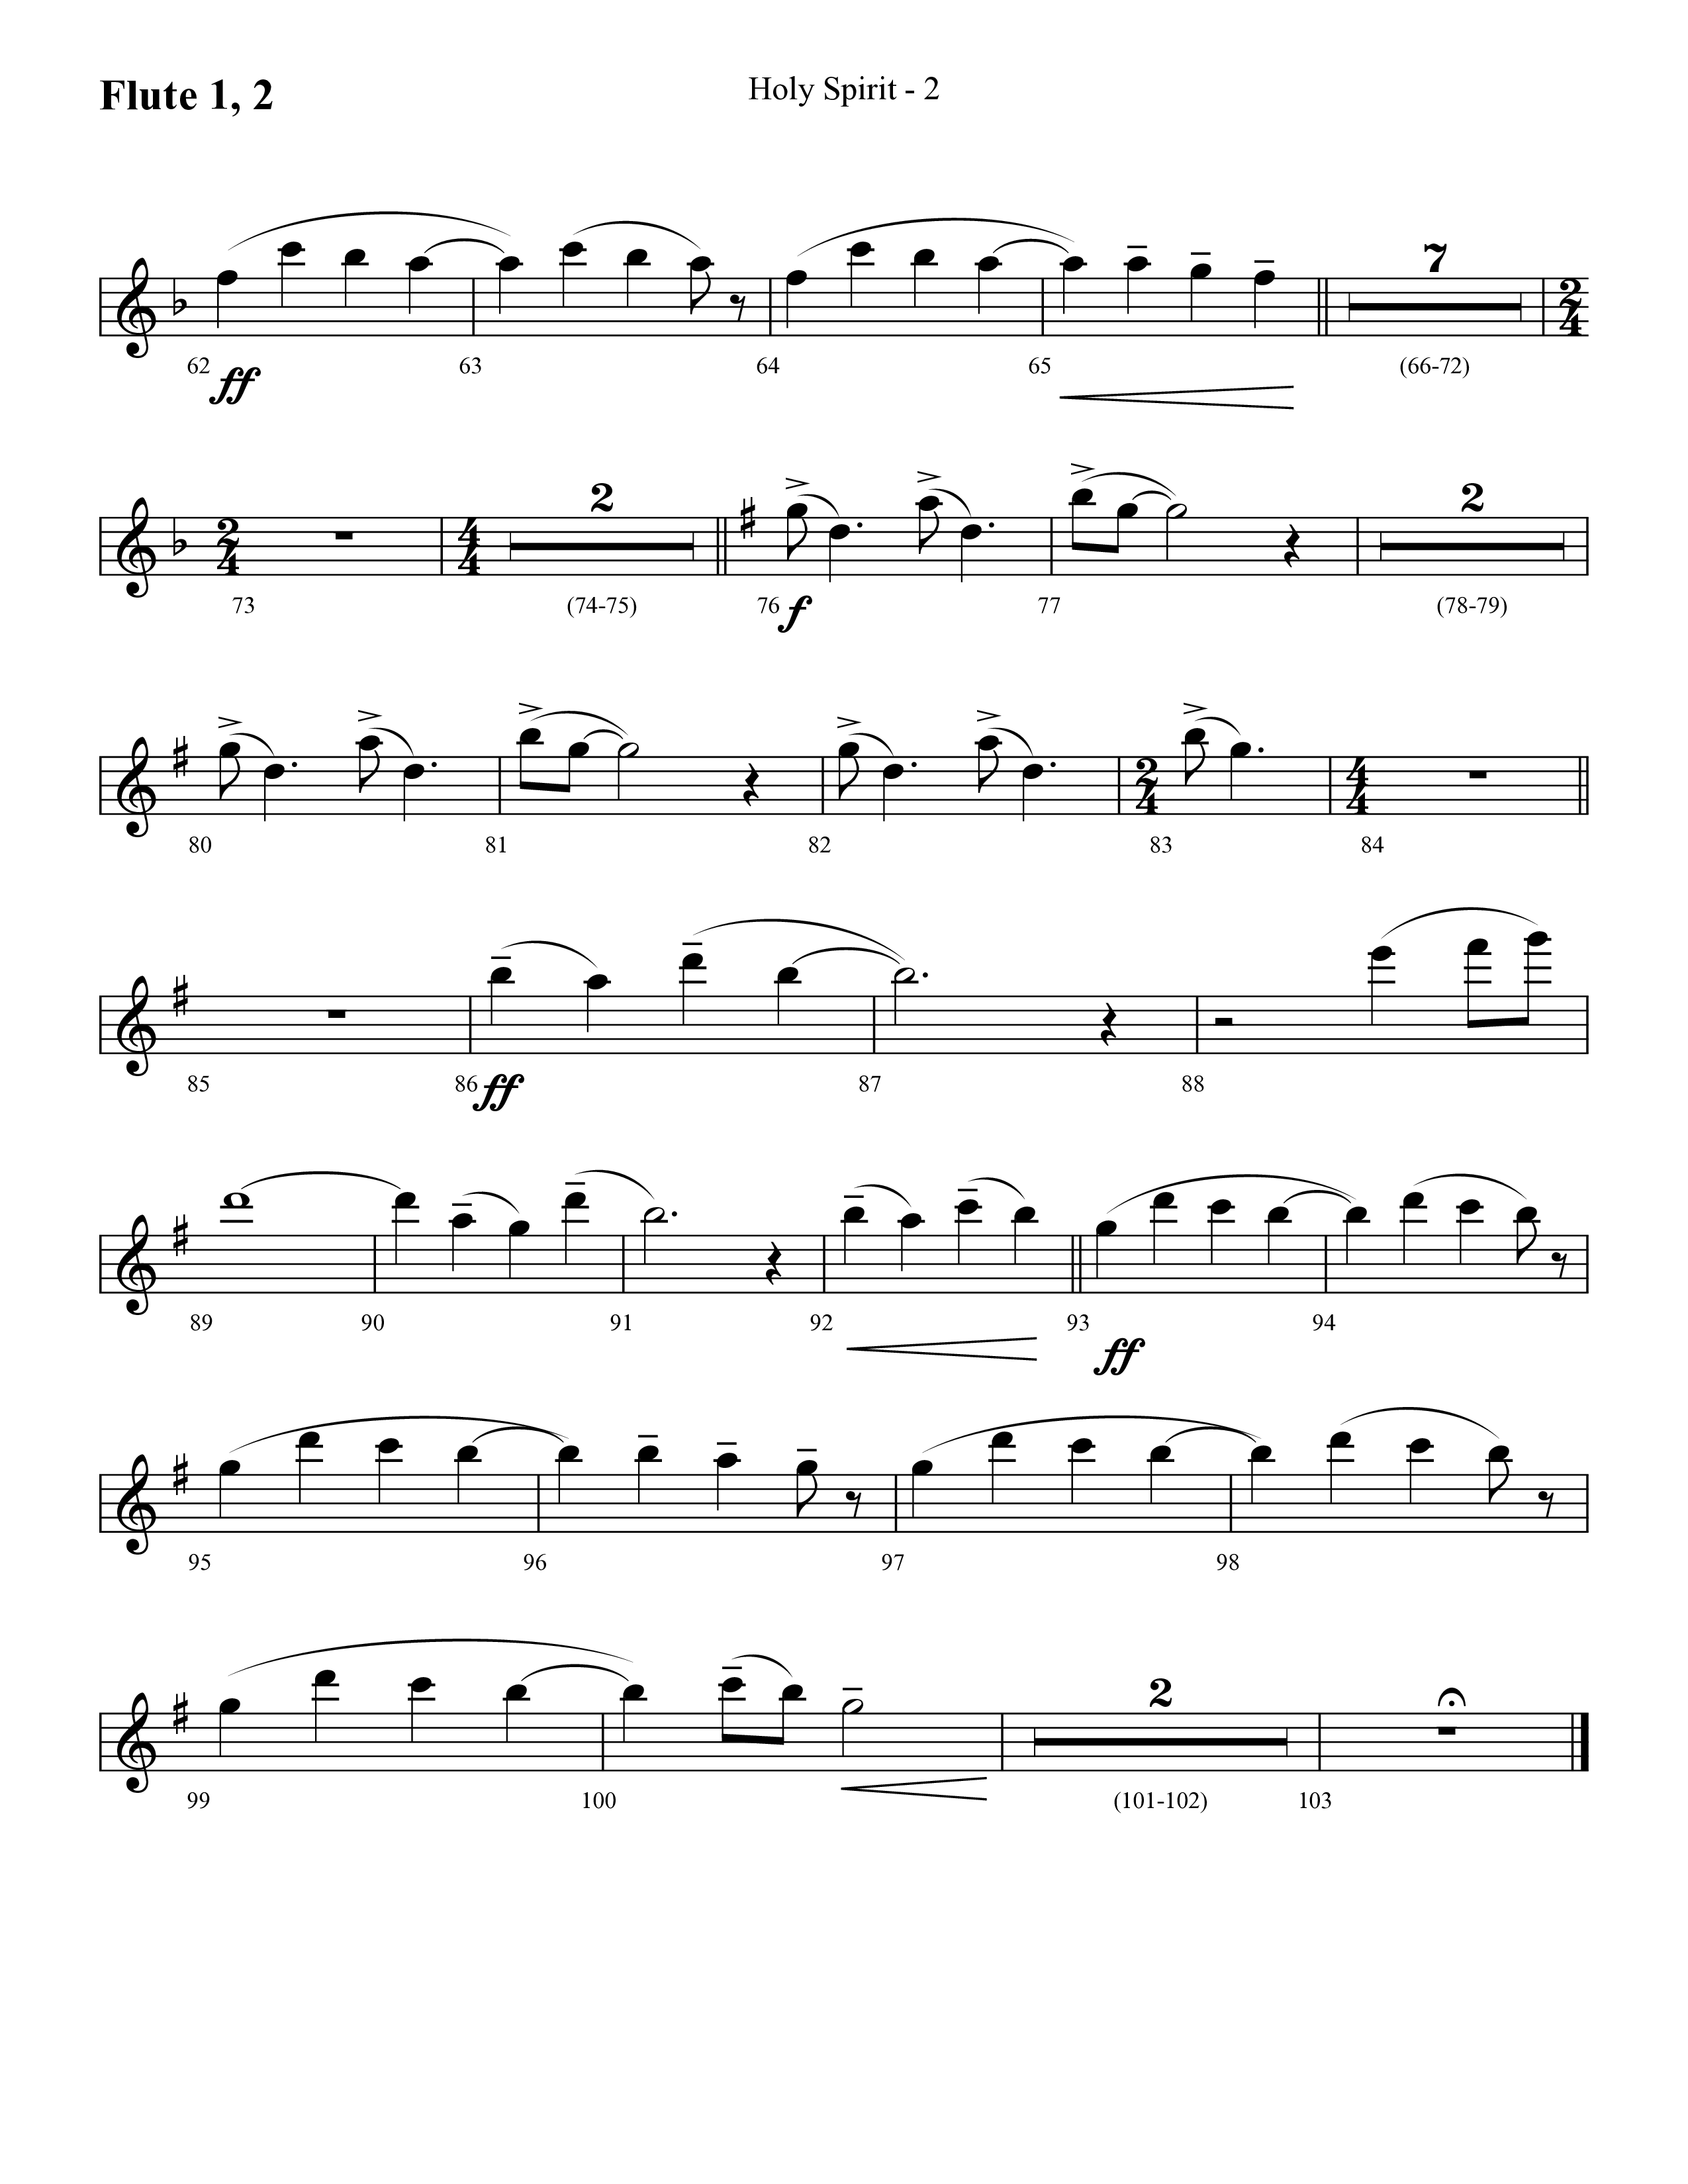 Holy Spirit  (Choral Anthem SATB) Flute 1/2 (Lifeway Choral / Arr. Cliff Duren)